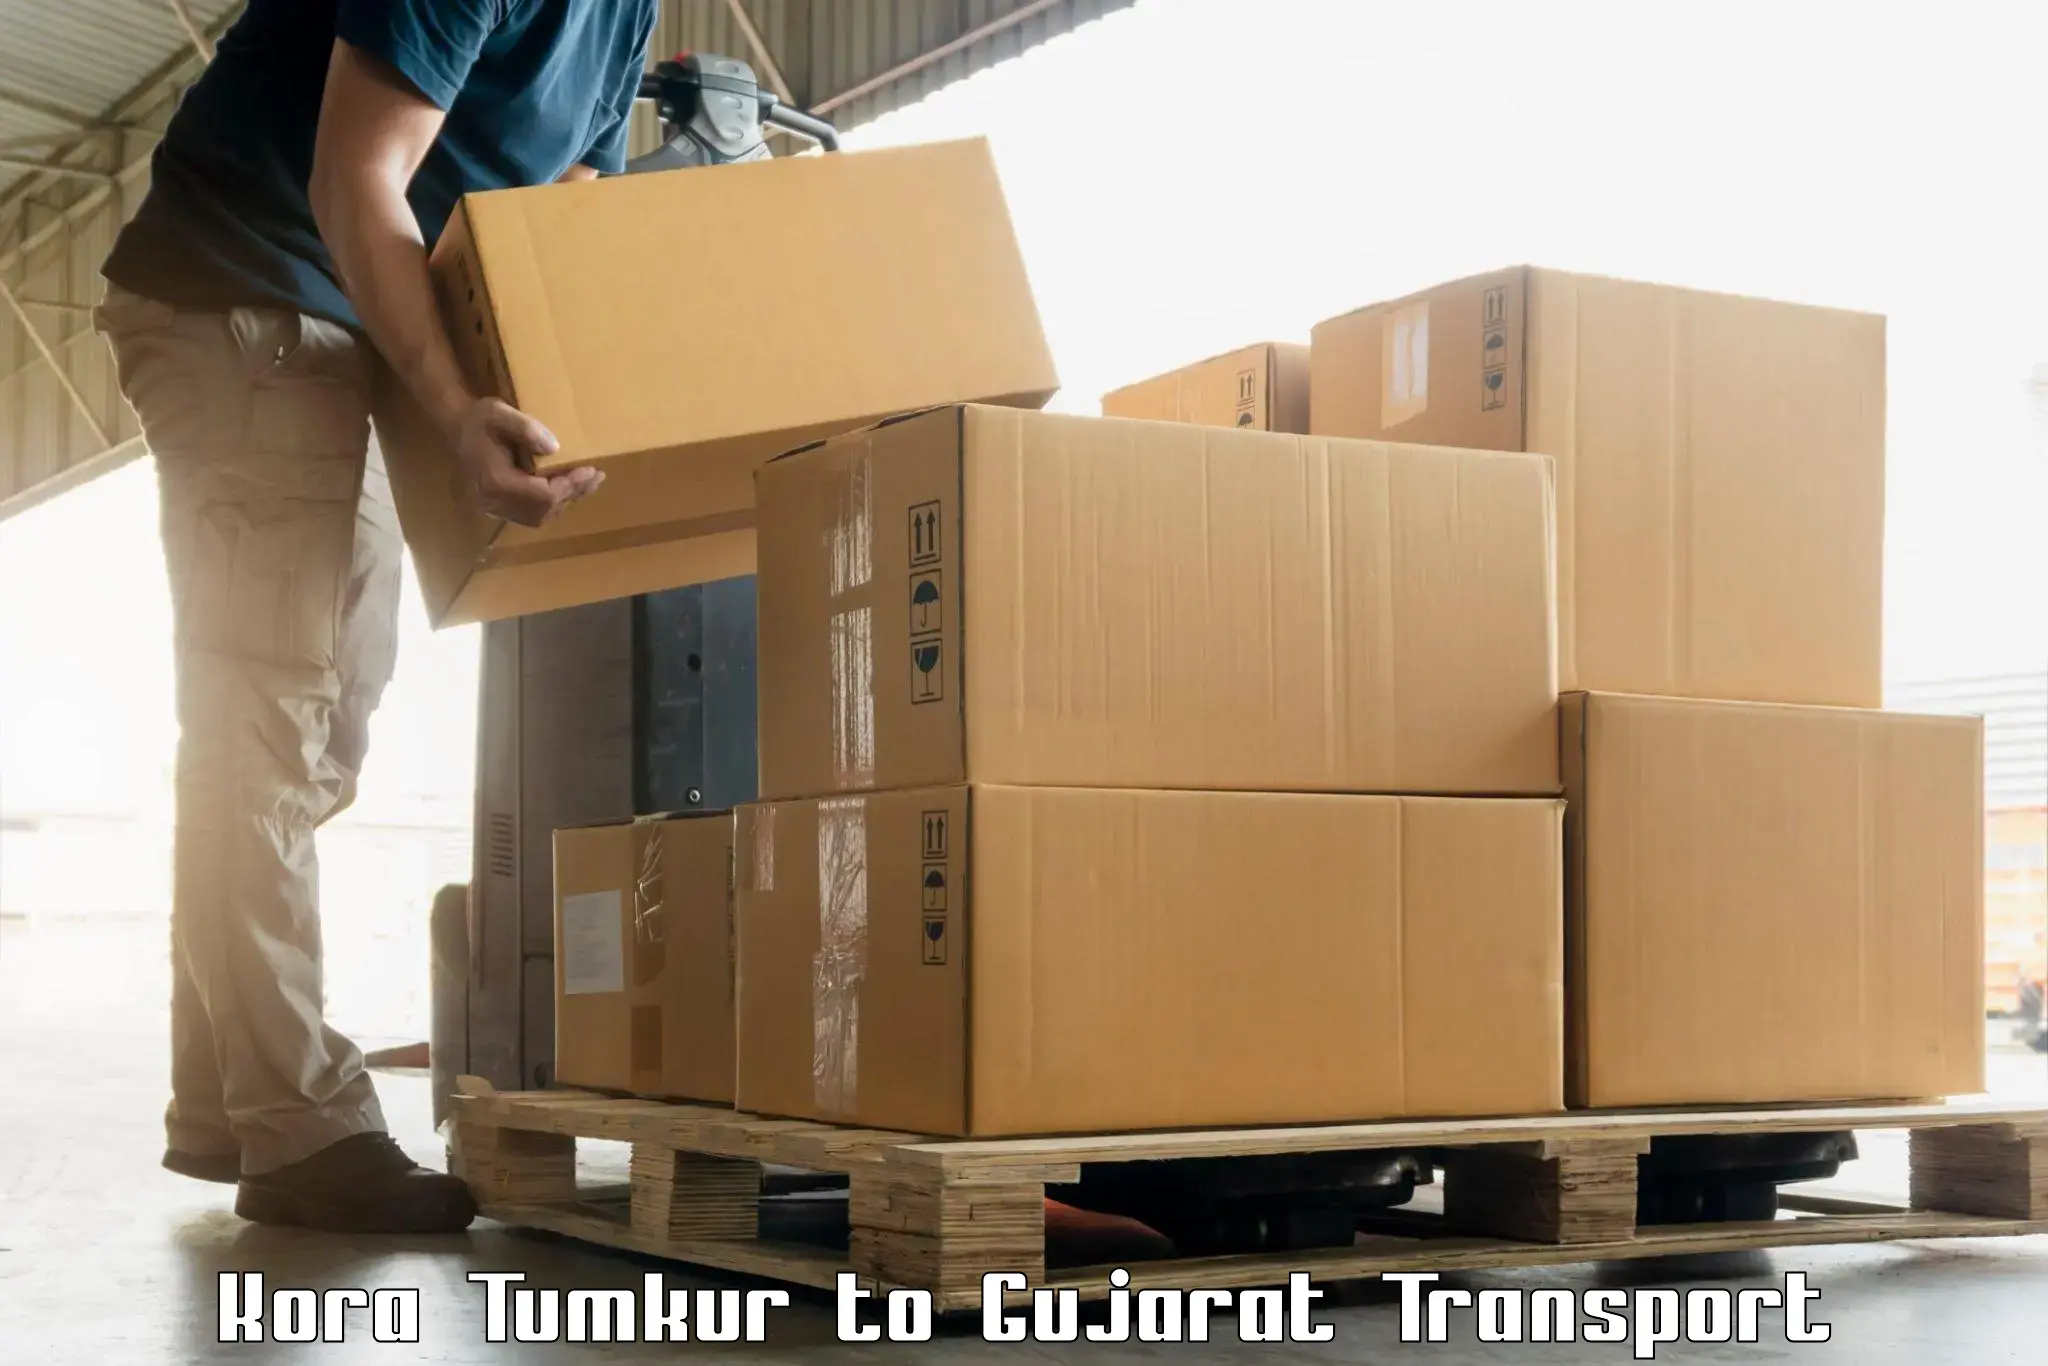 Cargo transport services in Kora Tumkur to Himatnagar